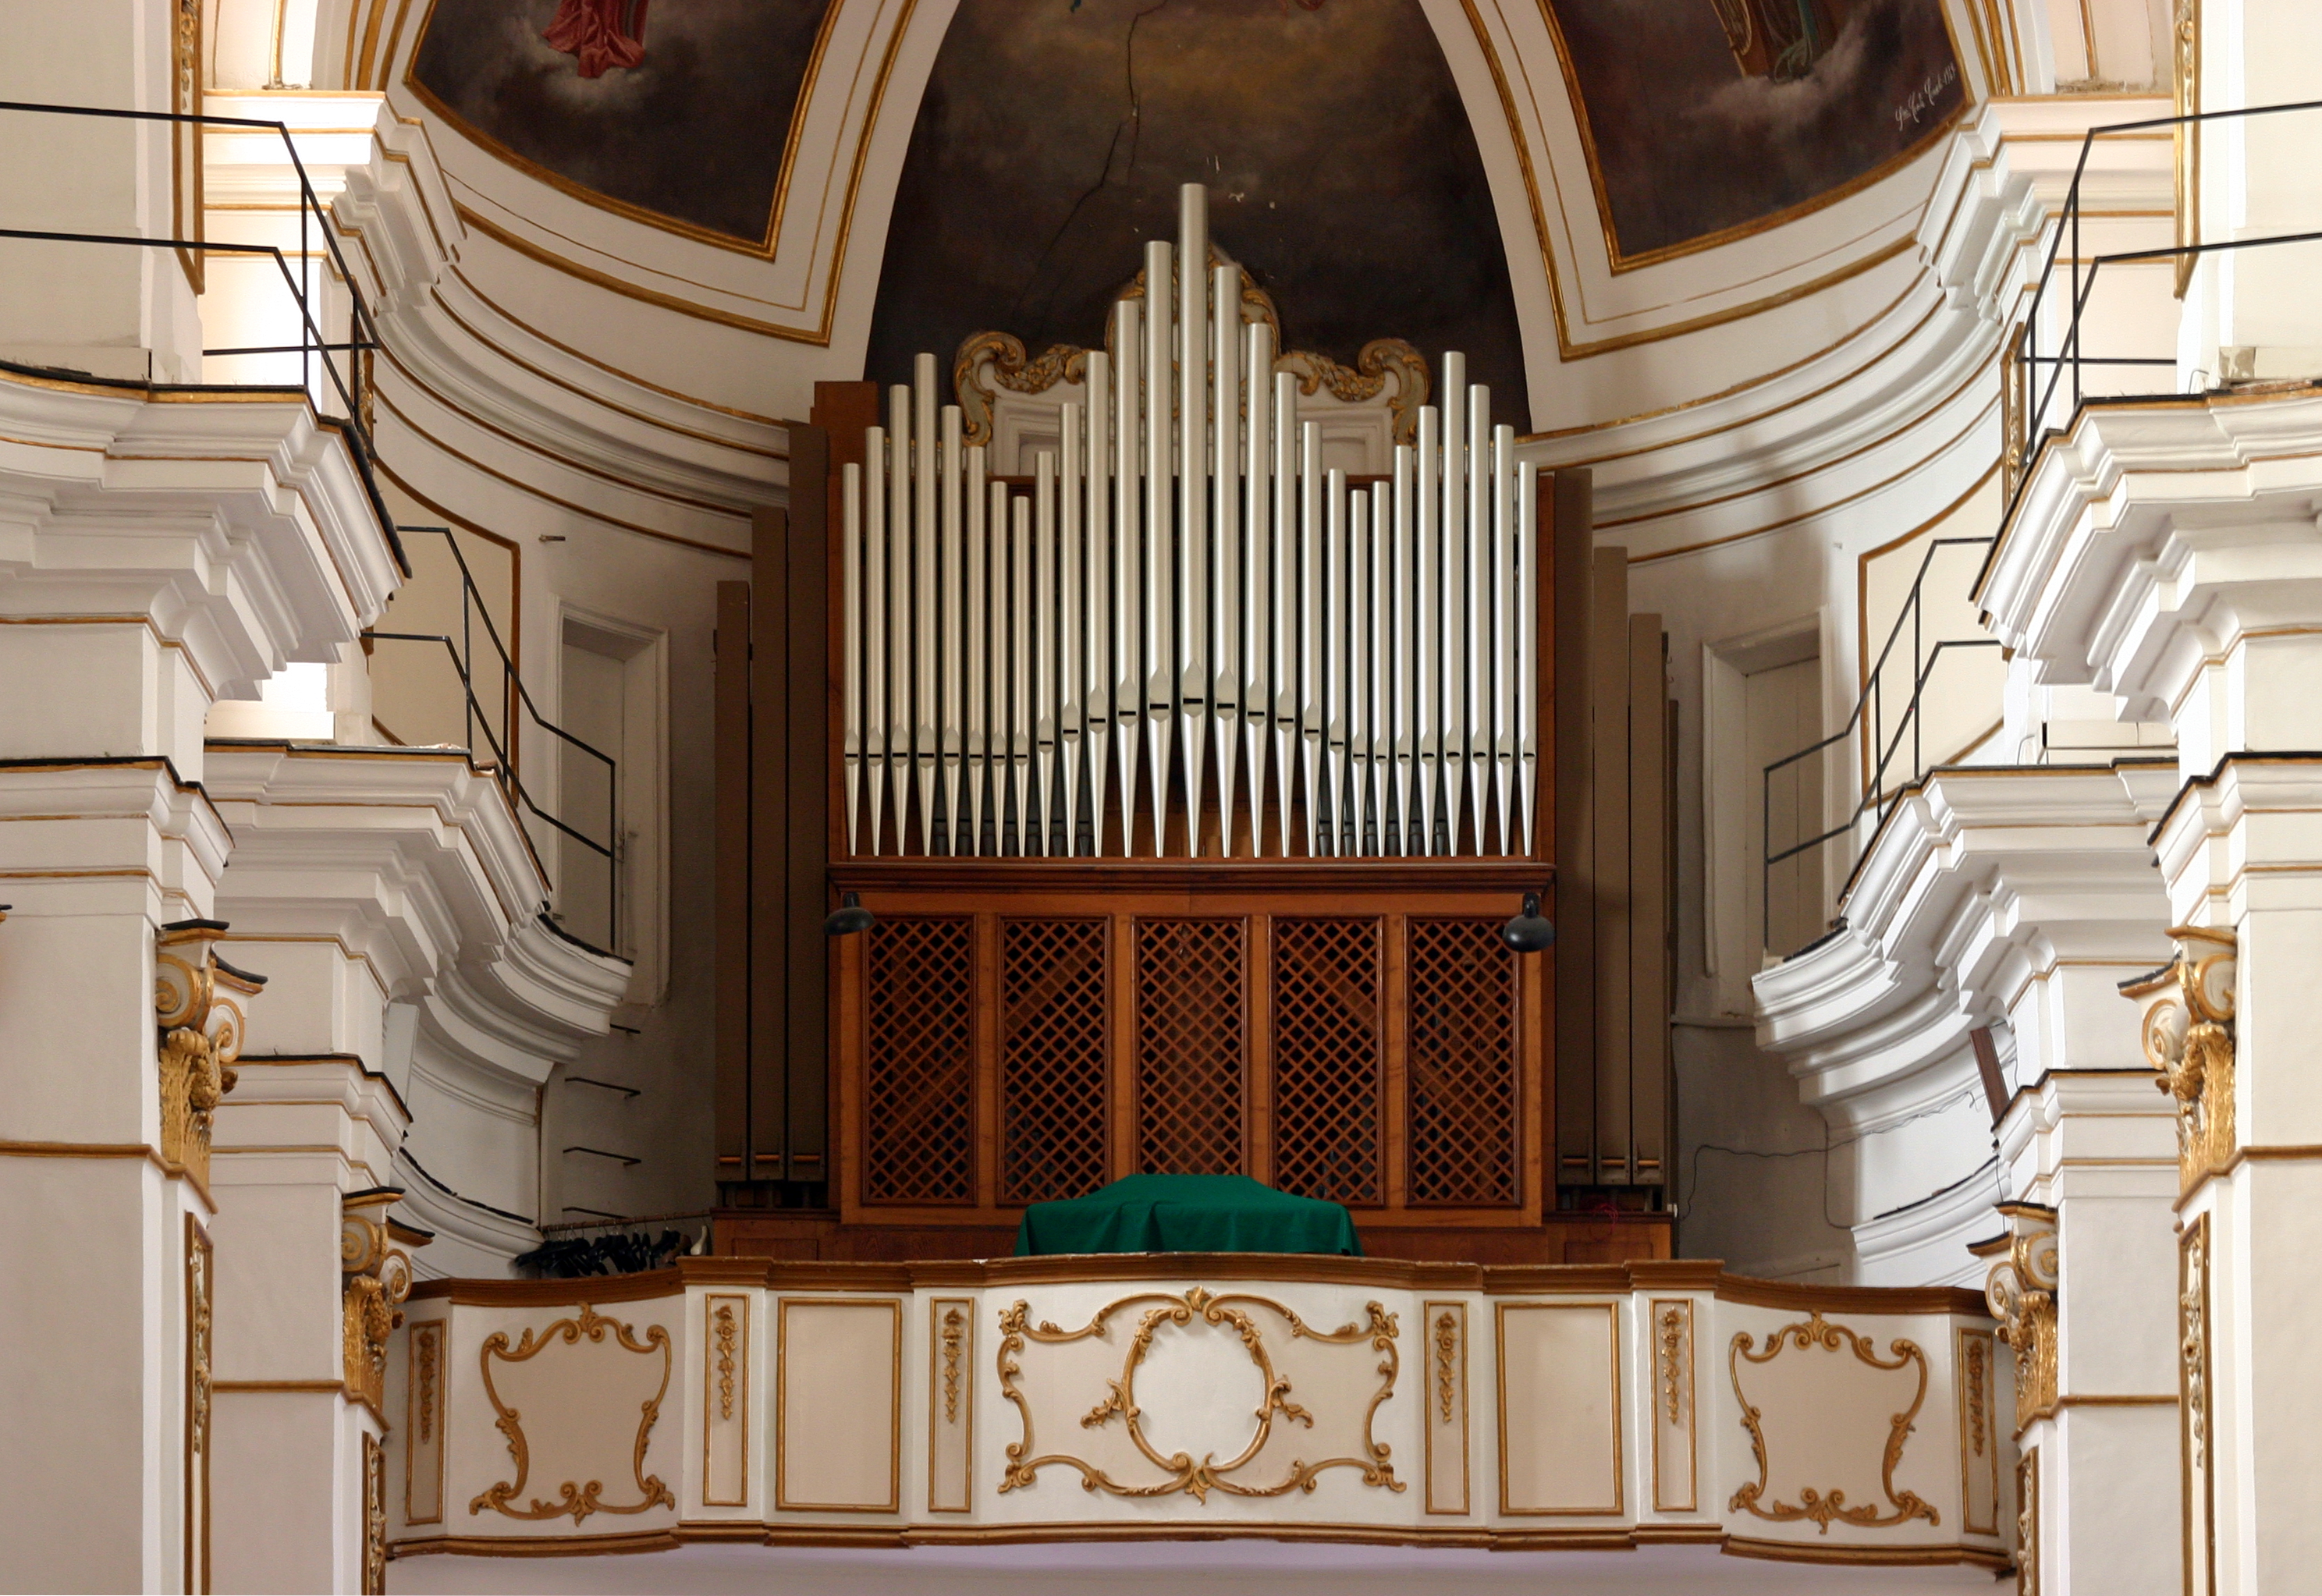 Pipe organ - San Francesco de Assisi - Agrigento - Italy 2015